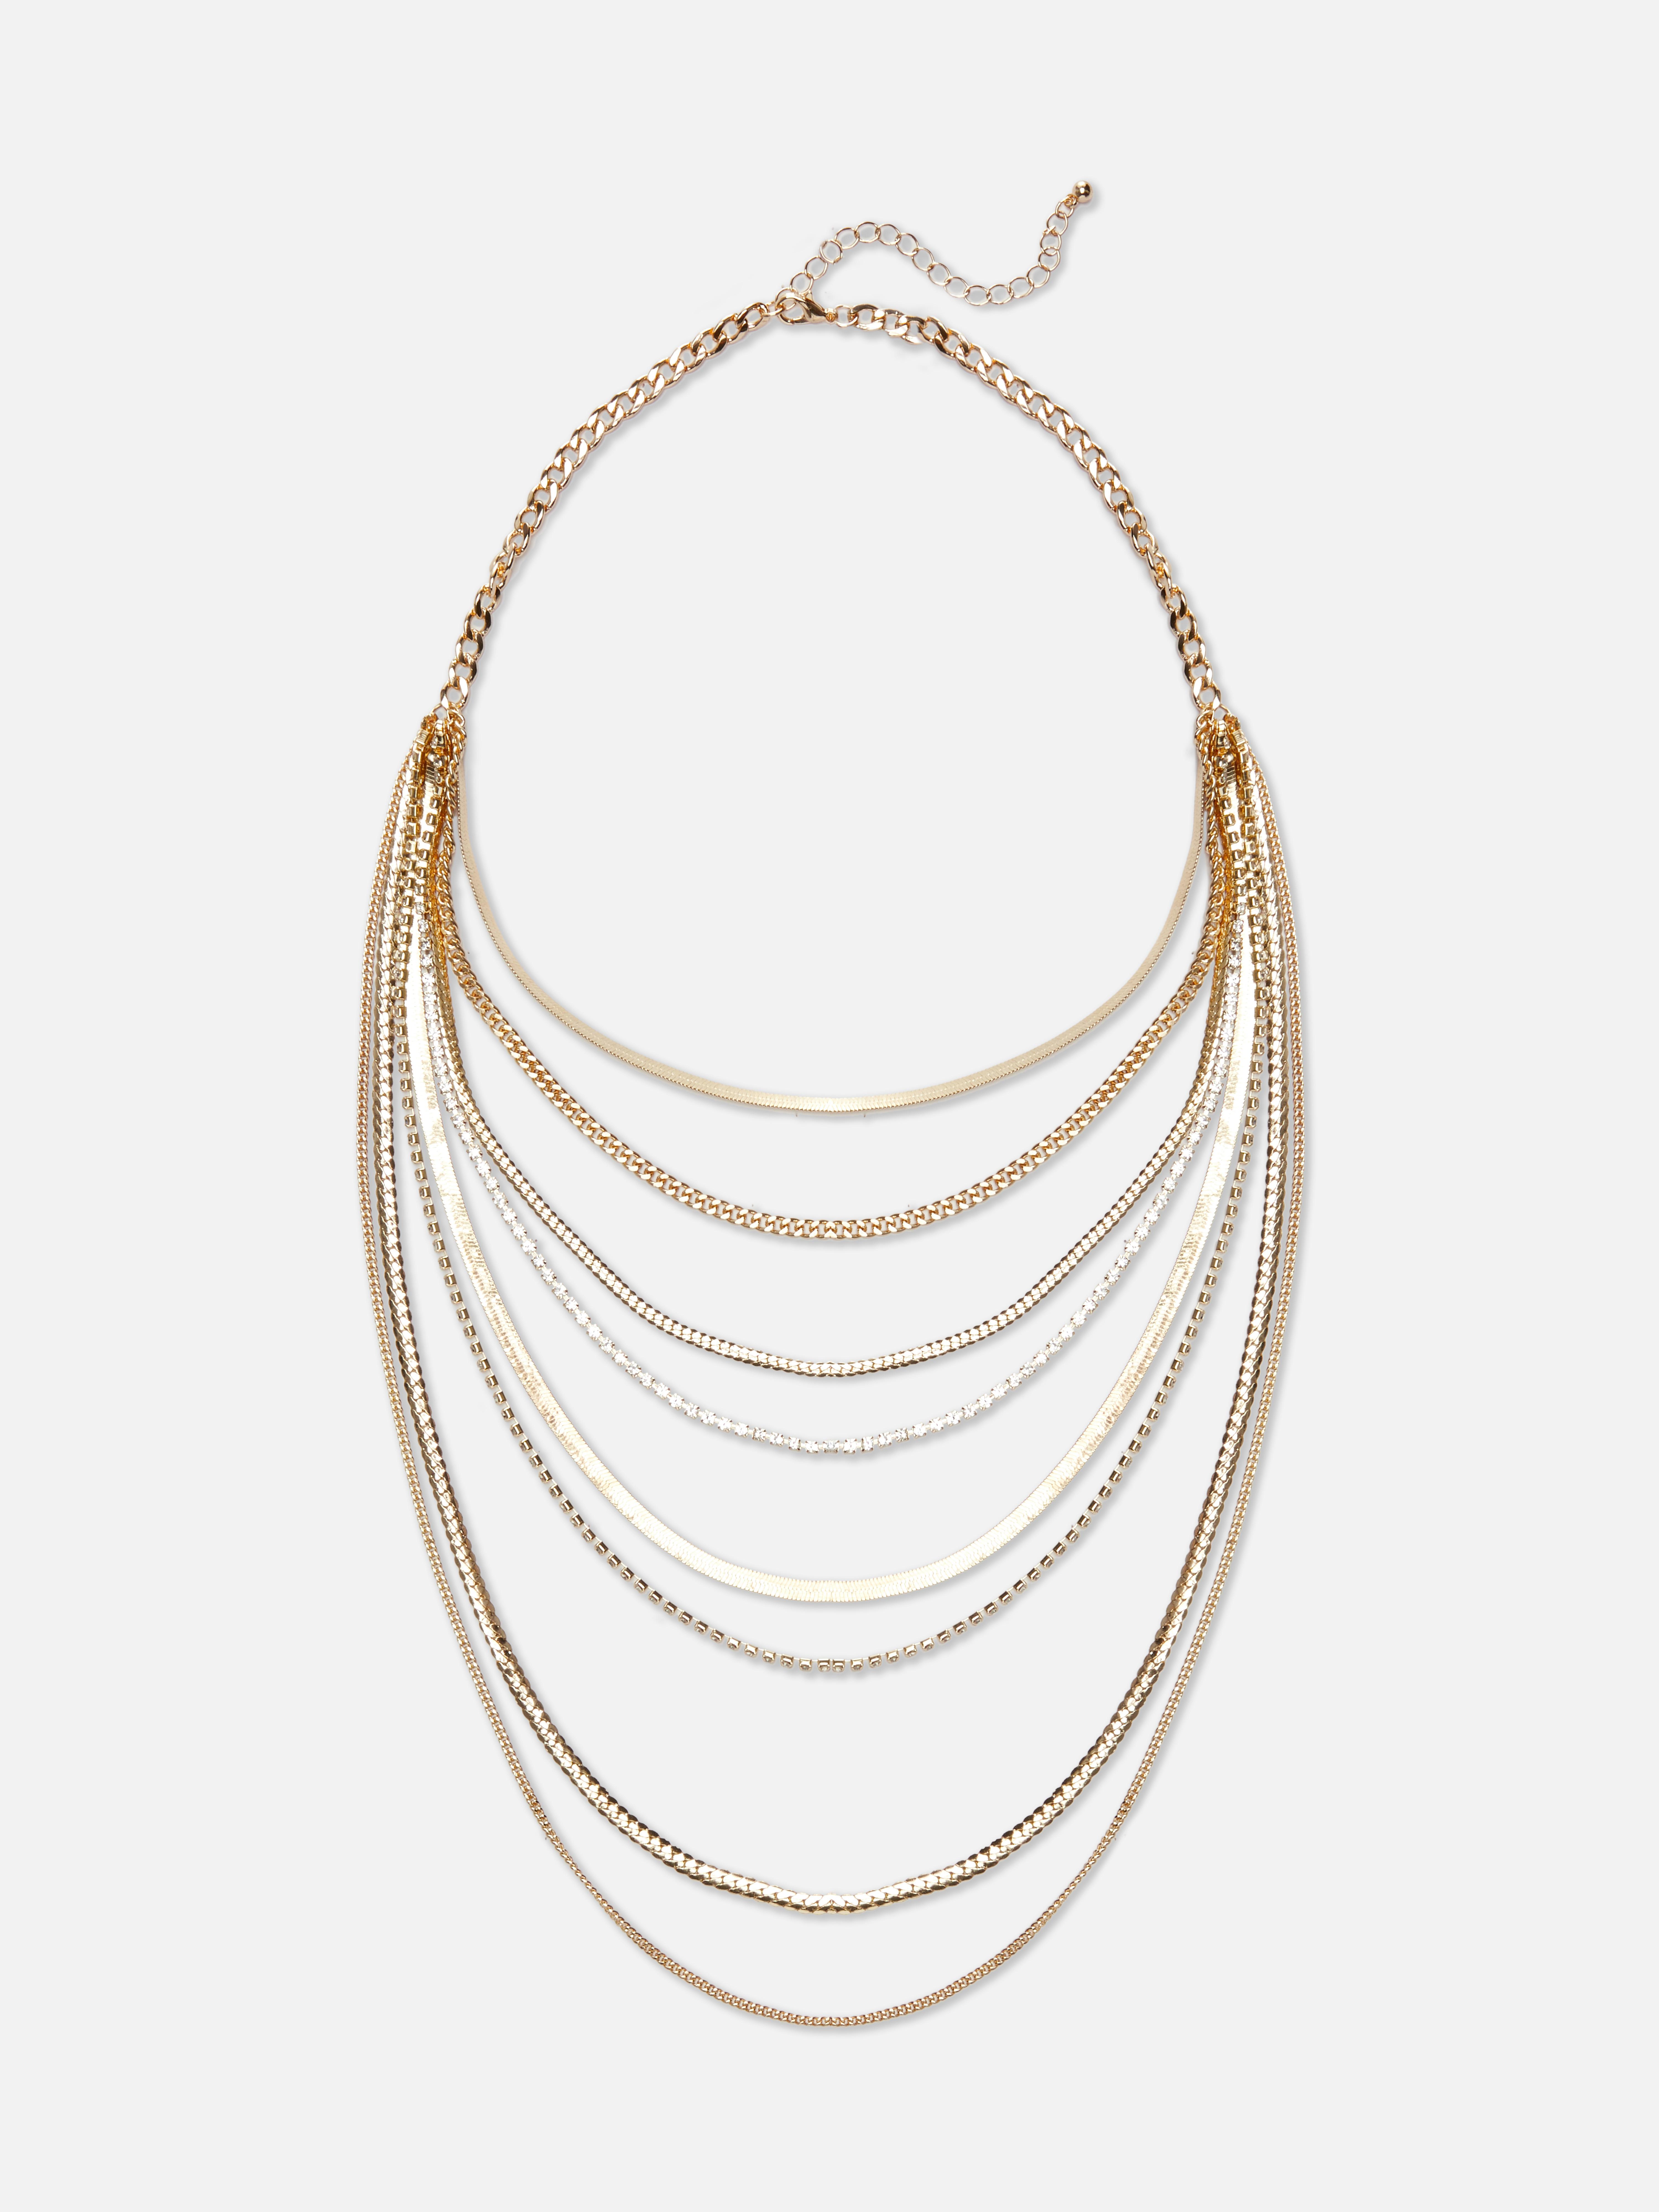 Rita Ora Layered Chain Necklace